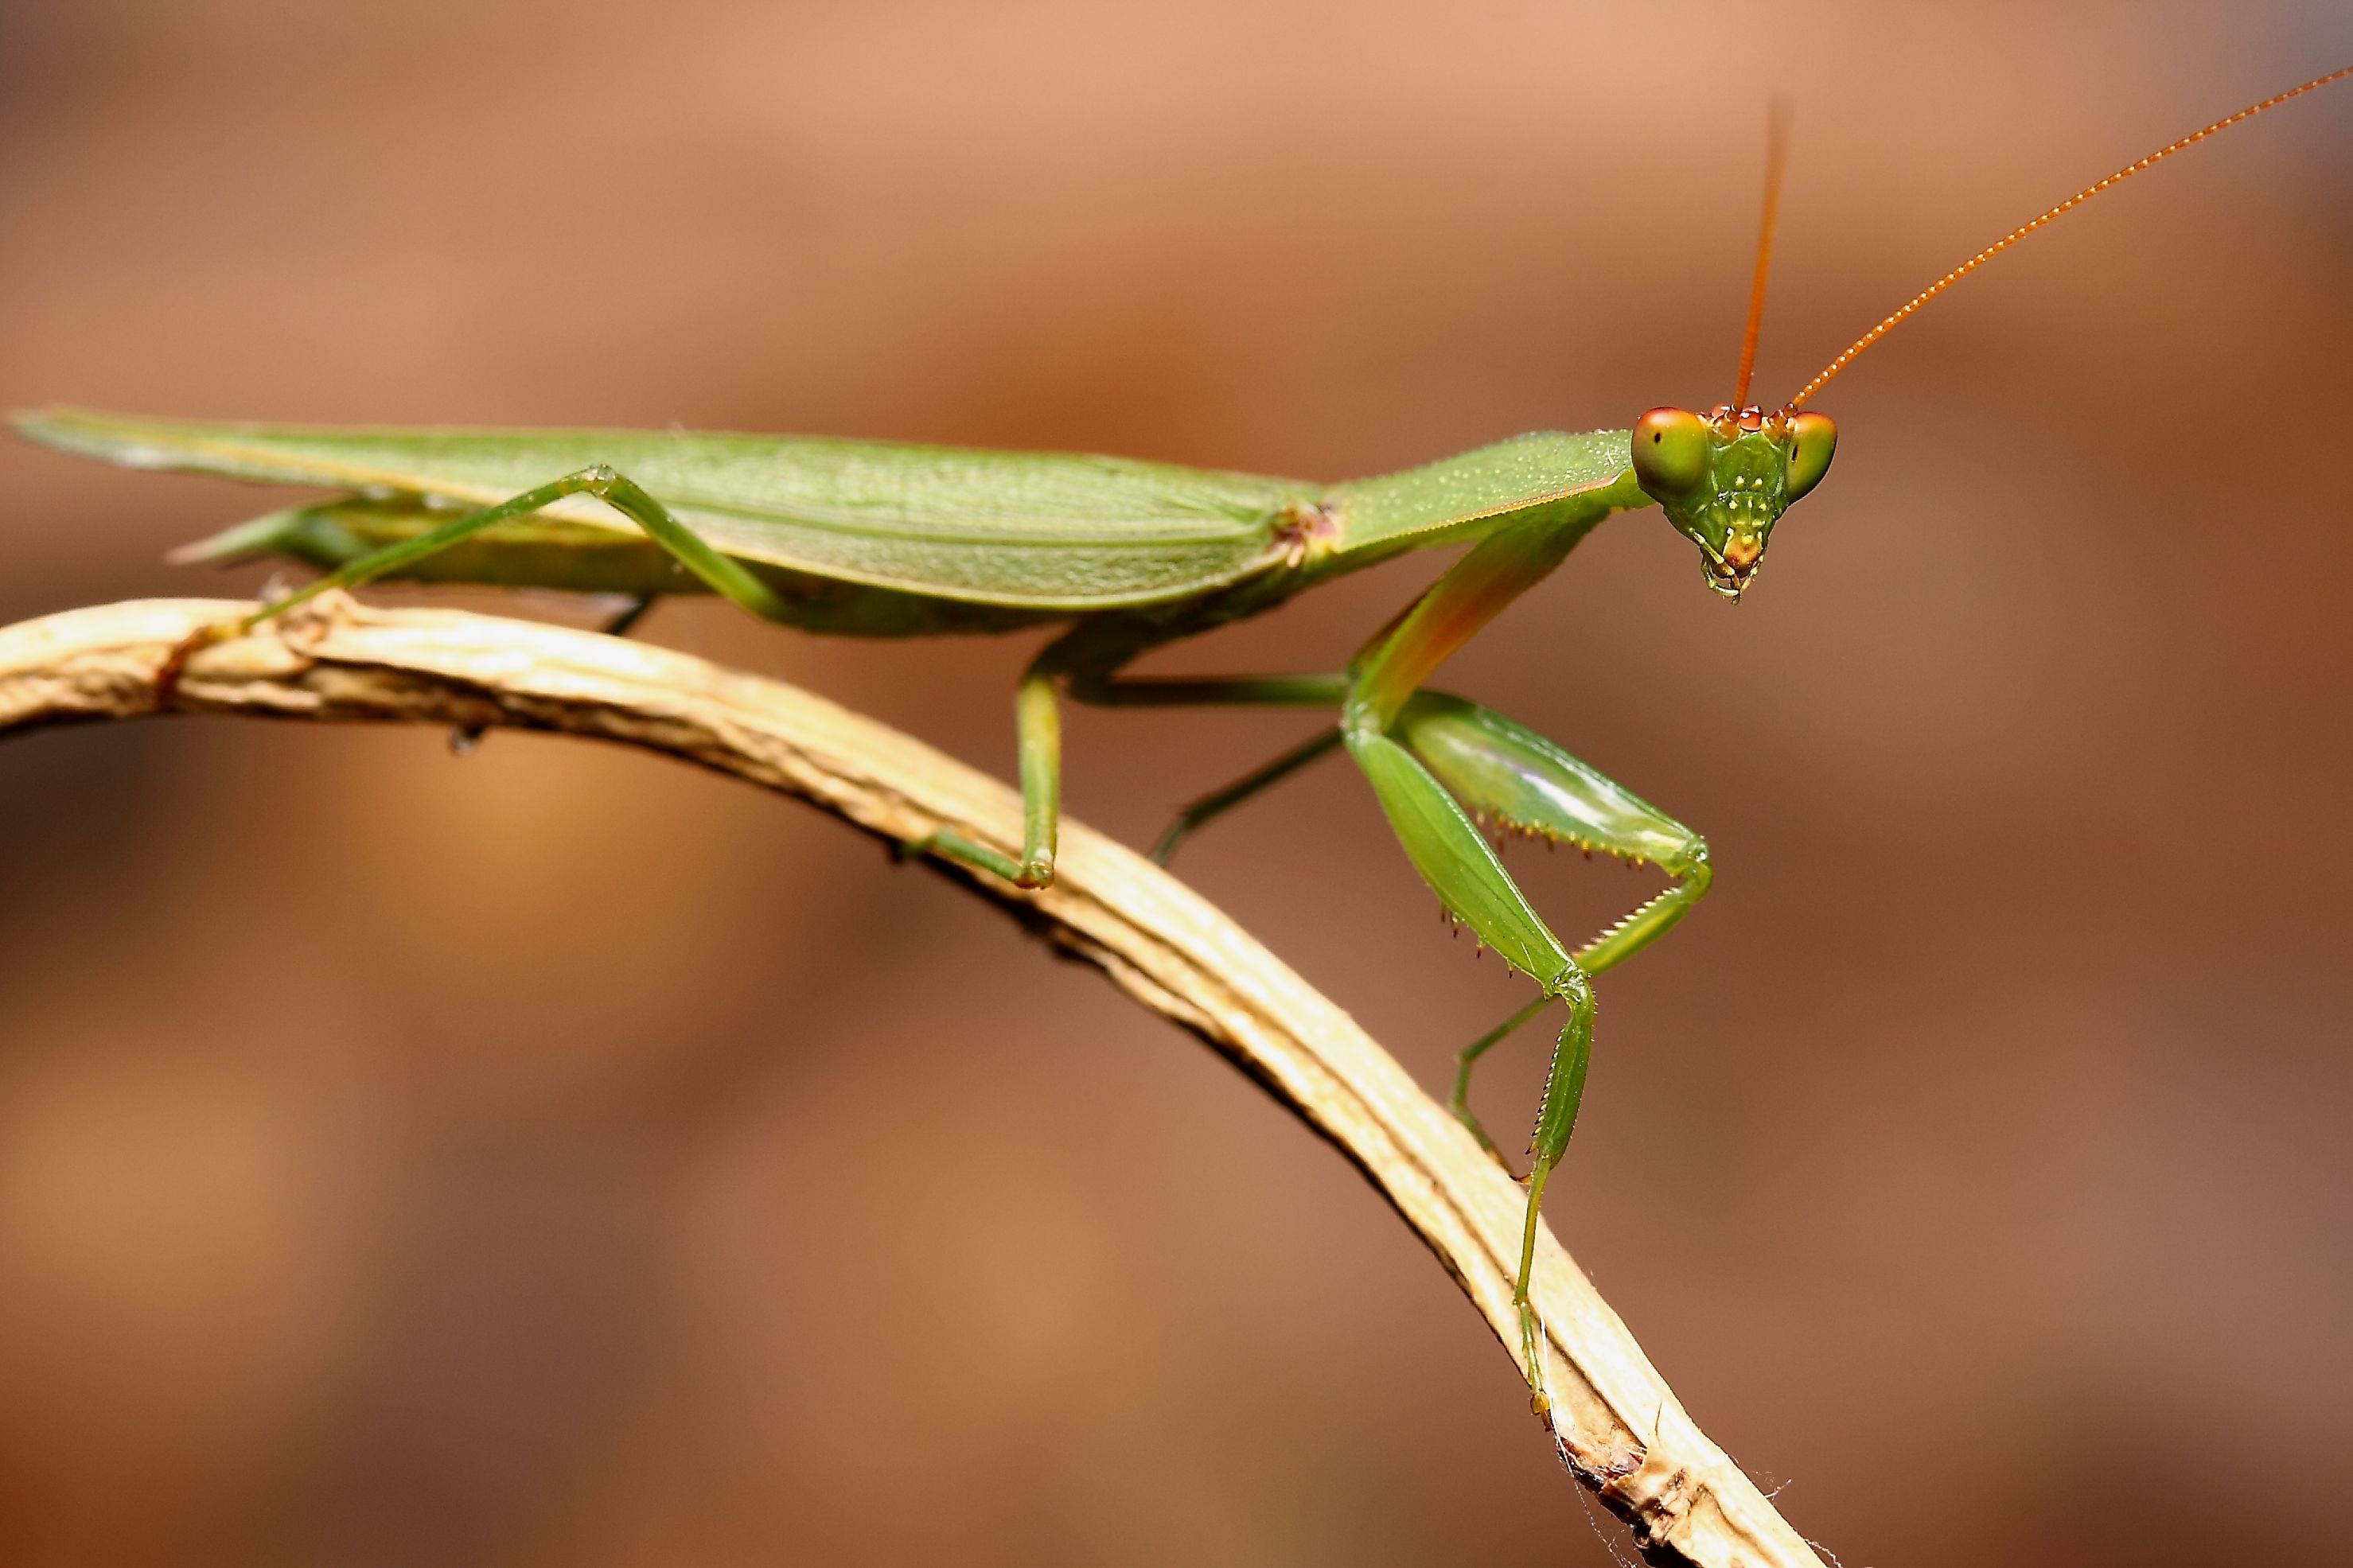 تصویر جذاب حشره Mantis سبز رنگ با شاخک های بلند